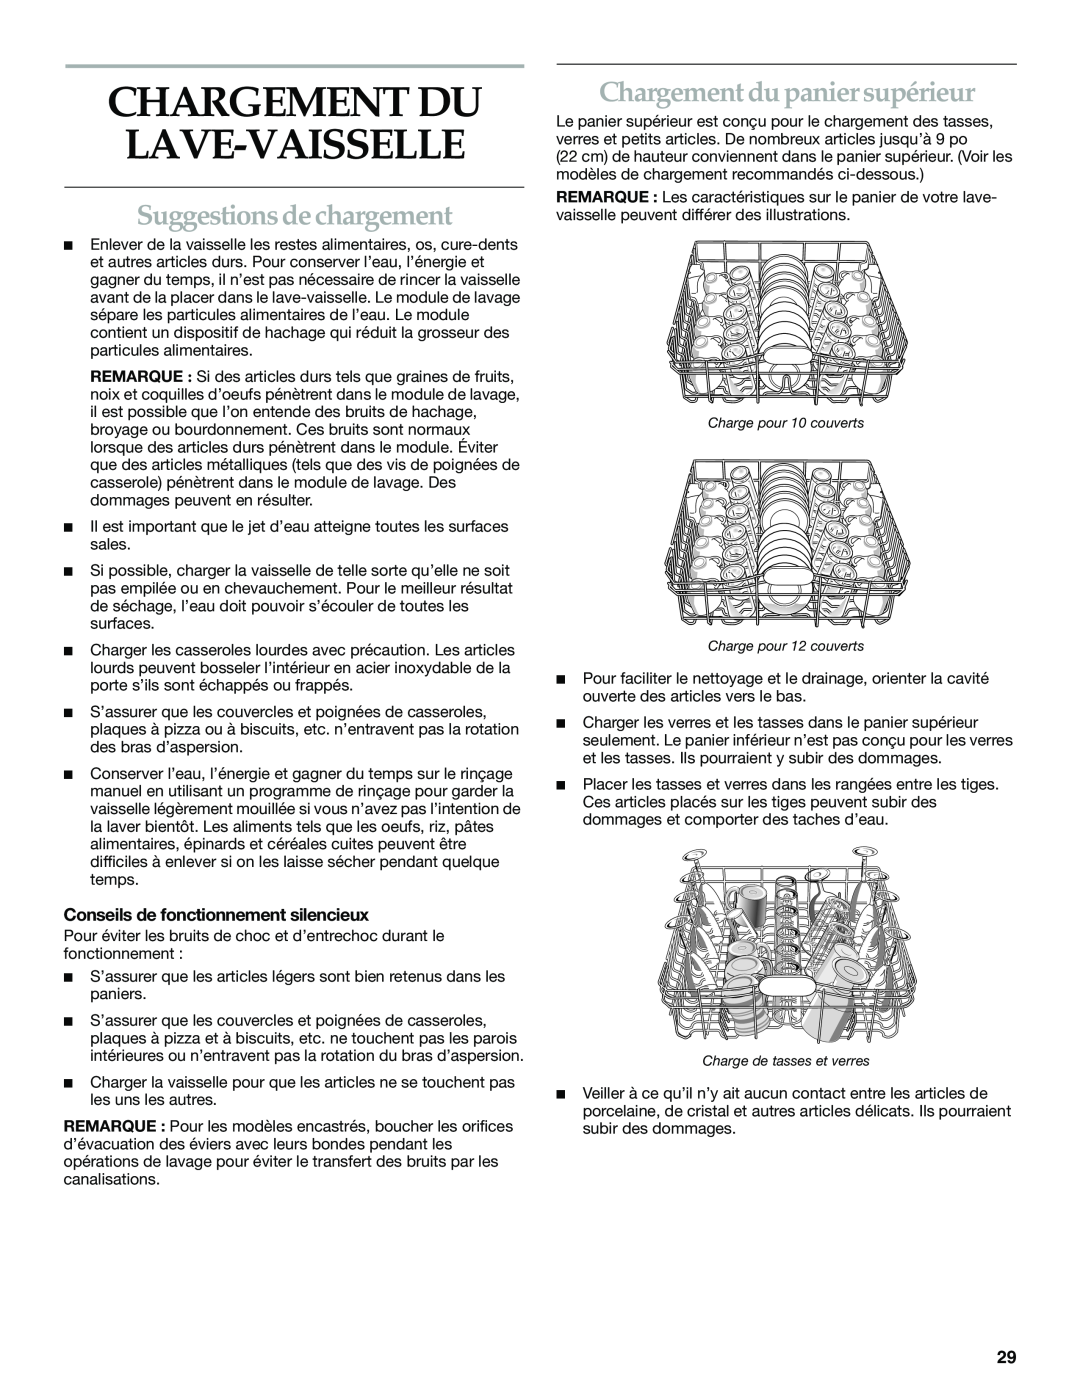 KitchenAid KUDS01DL manual Suggestions de chargement, Chargement du panier supérieur, Conseils de fonctionnement silencieux 